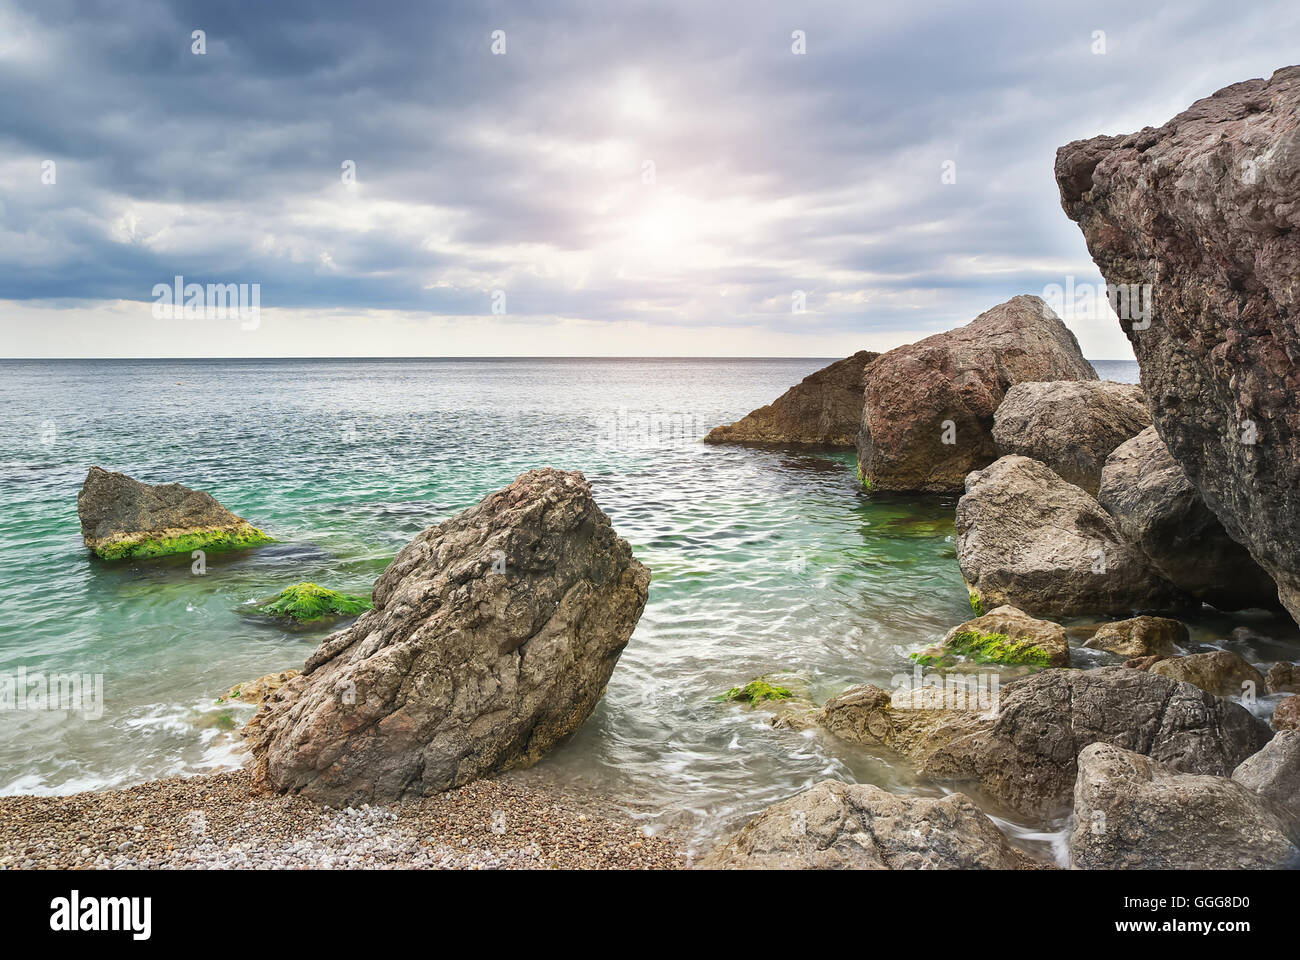 Meeresküste mit großen Felsen. Schöne Seenlandschaft. Natur-Zusammensetzung Stockfoto